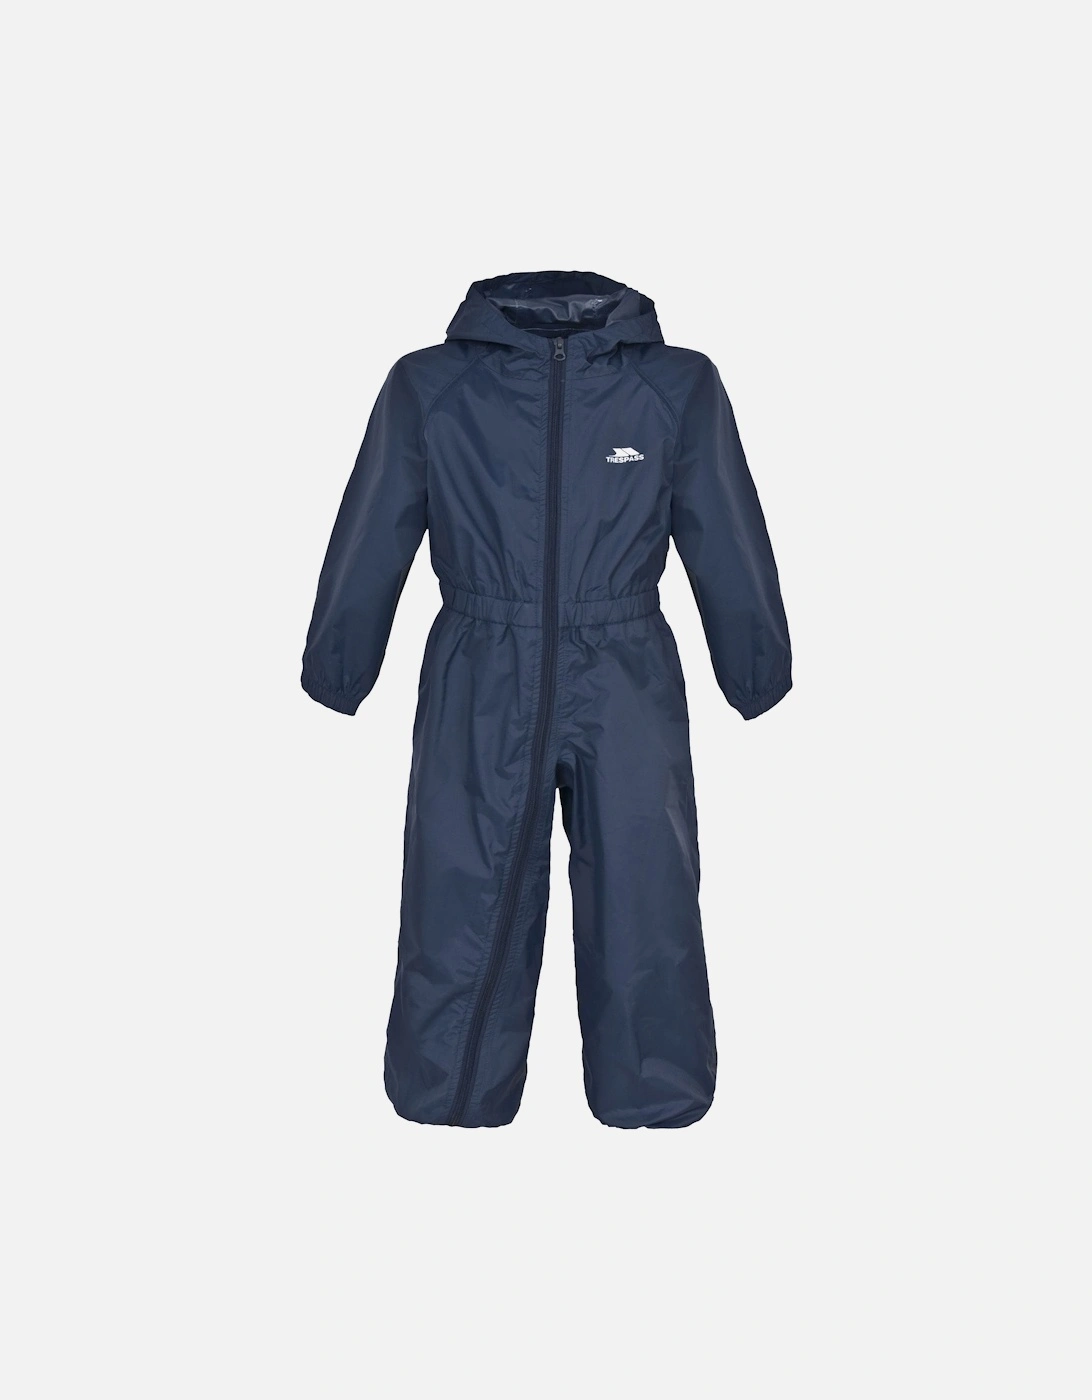 Kids Button Waterproof Rain Suit